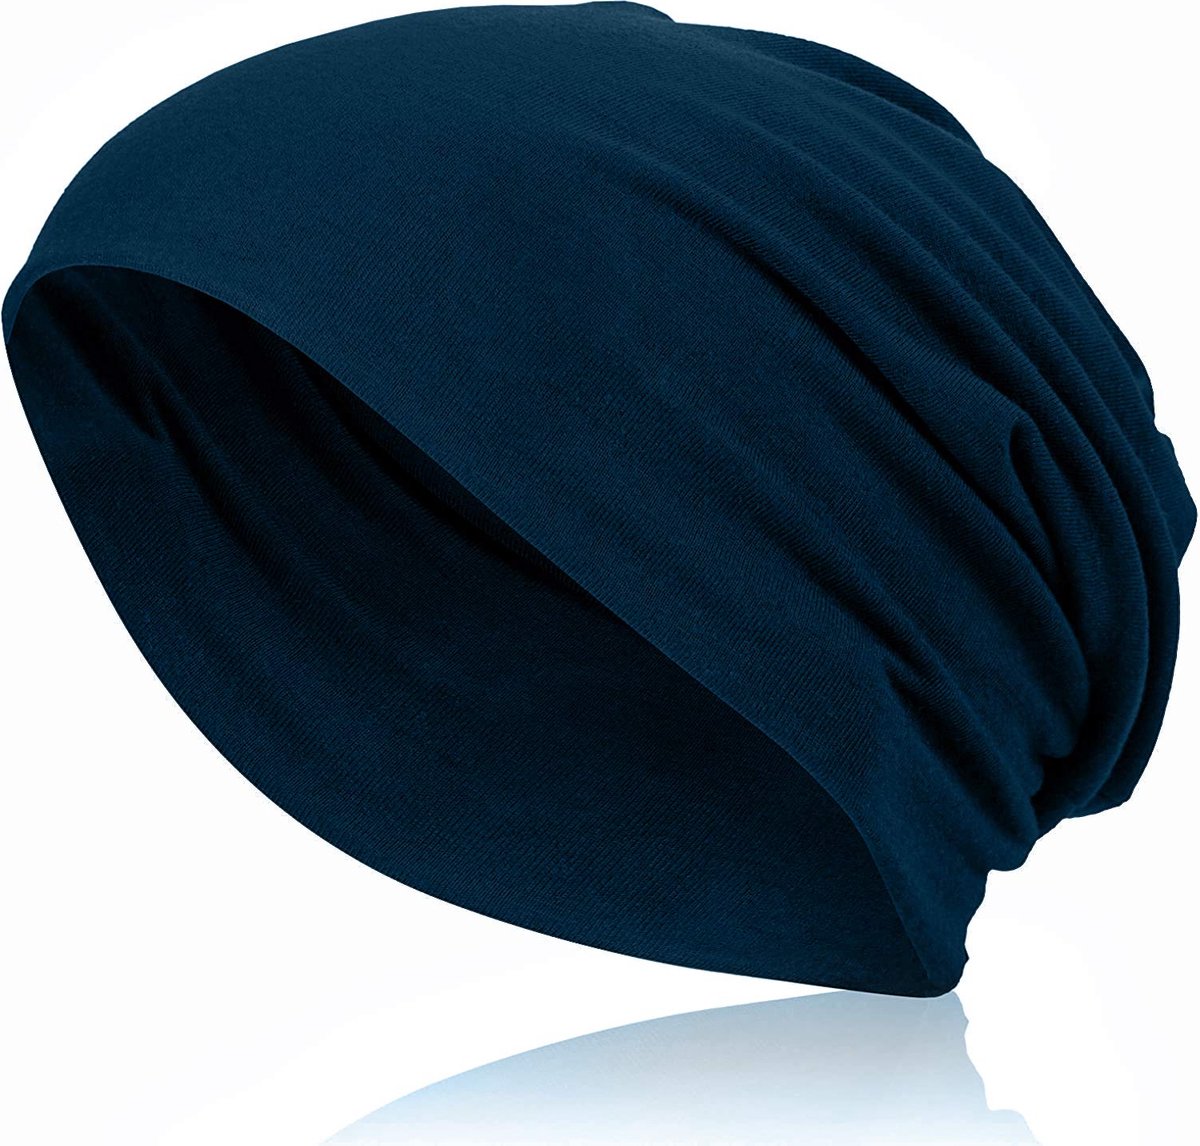 Ted Williams unisex beanie marineblauw van fijne jersey stof - ademend, elastisch, one size